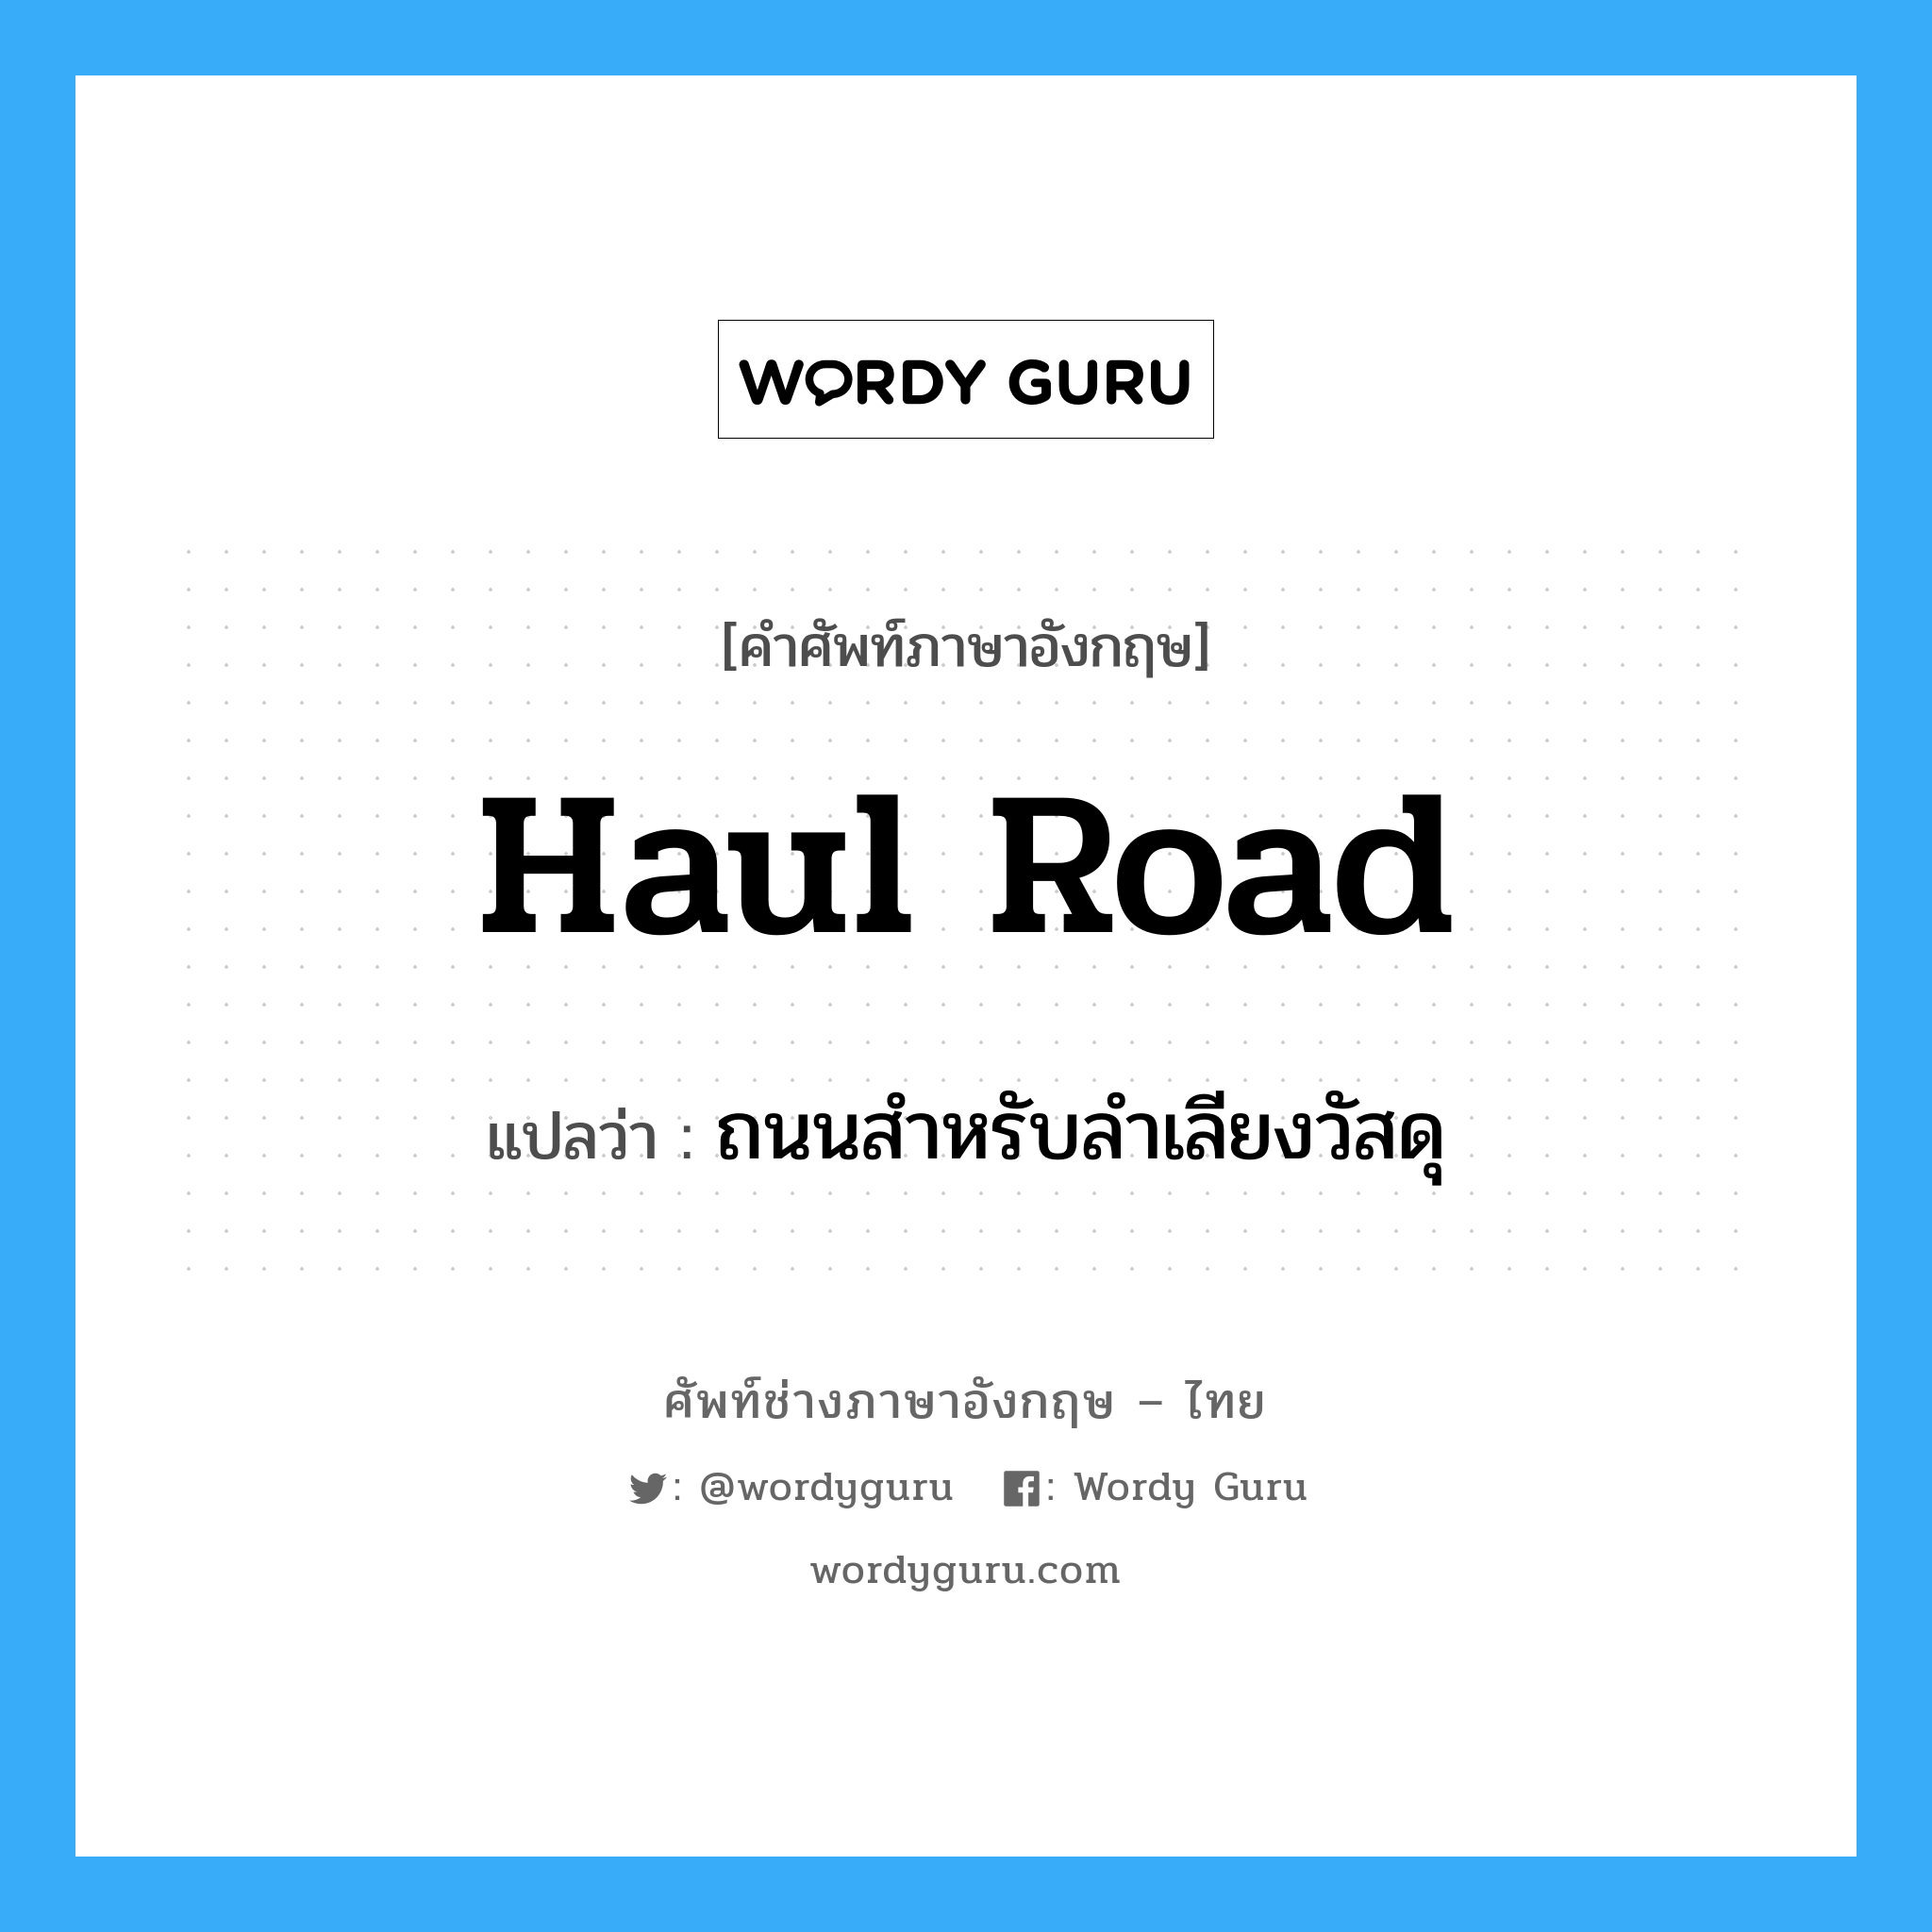 haul road แปลว่า?, คำศัพท์ช่างภาษาอังกฤษ - ไทย haul road คำศัพท์ภาษาอังกฤษ haul road แปลว่า ถนนสำหรับลำเลียงวัสดุ